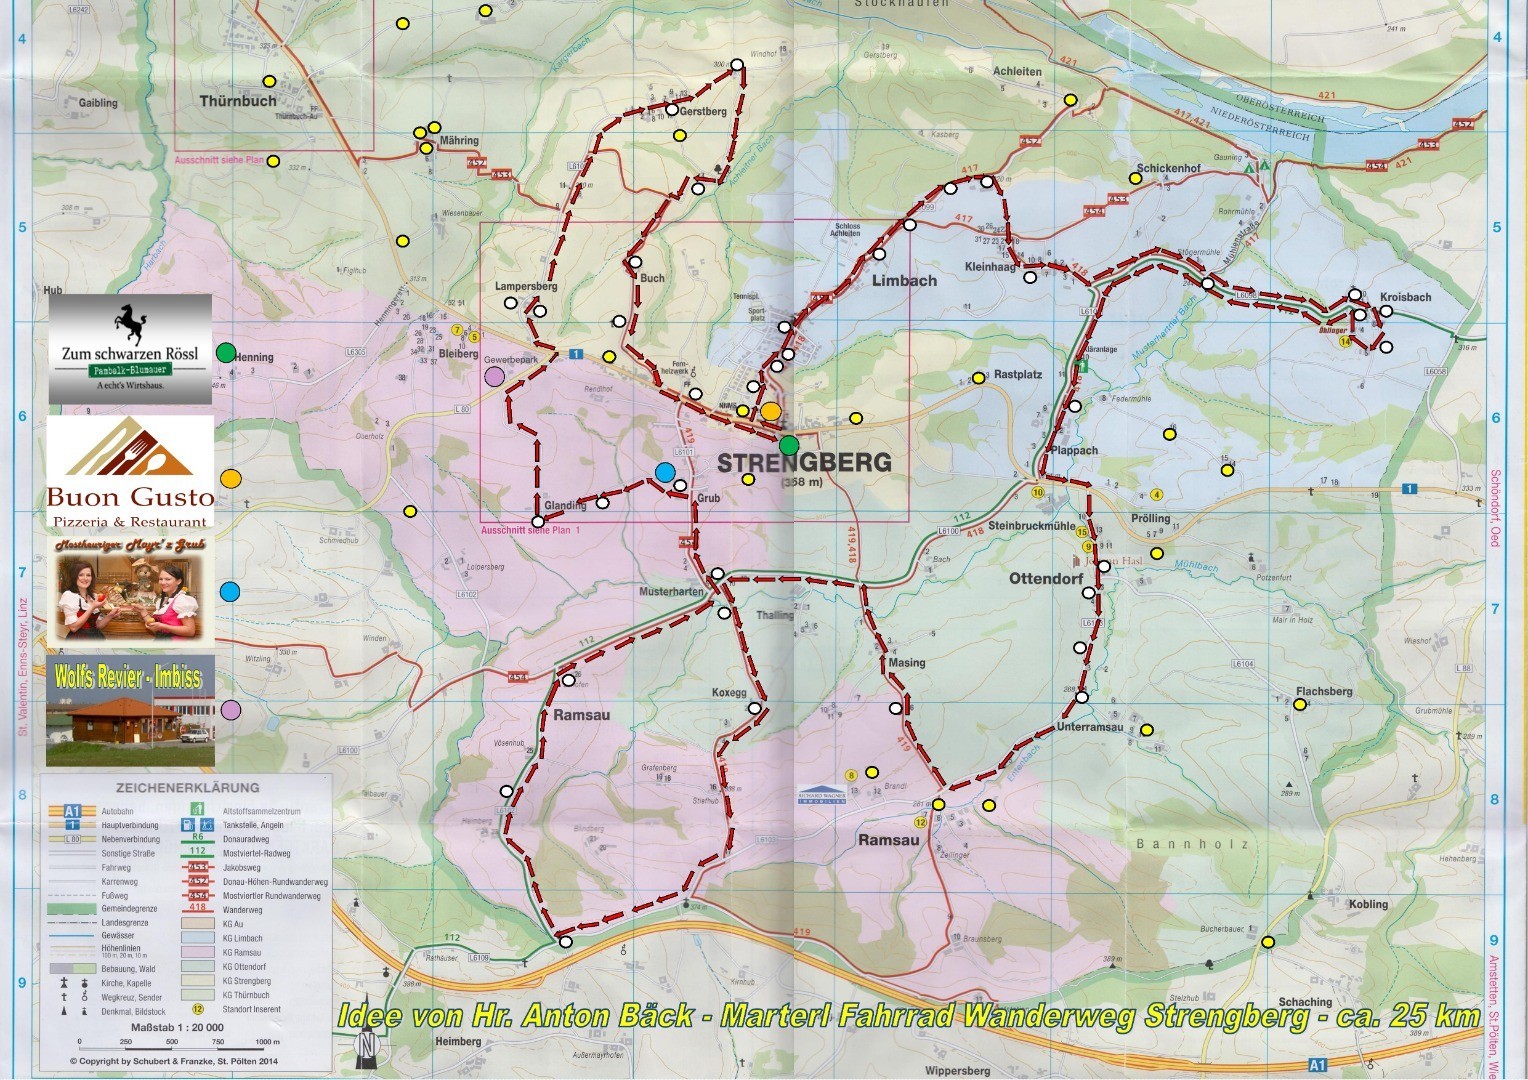 Marterl Fahrrad Weg A3 - Karte neu.jpg